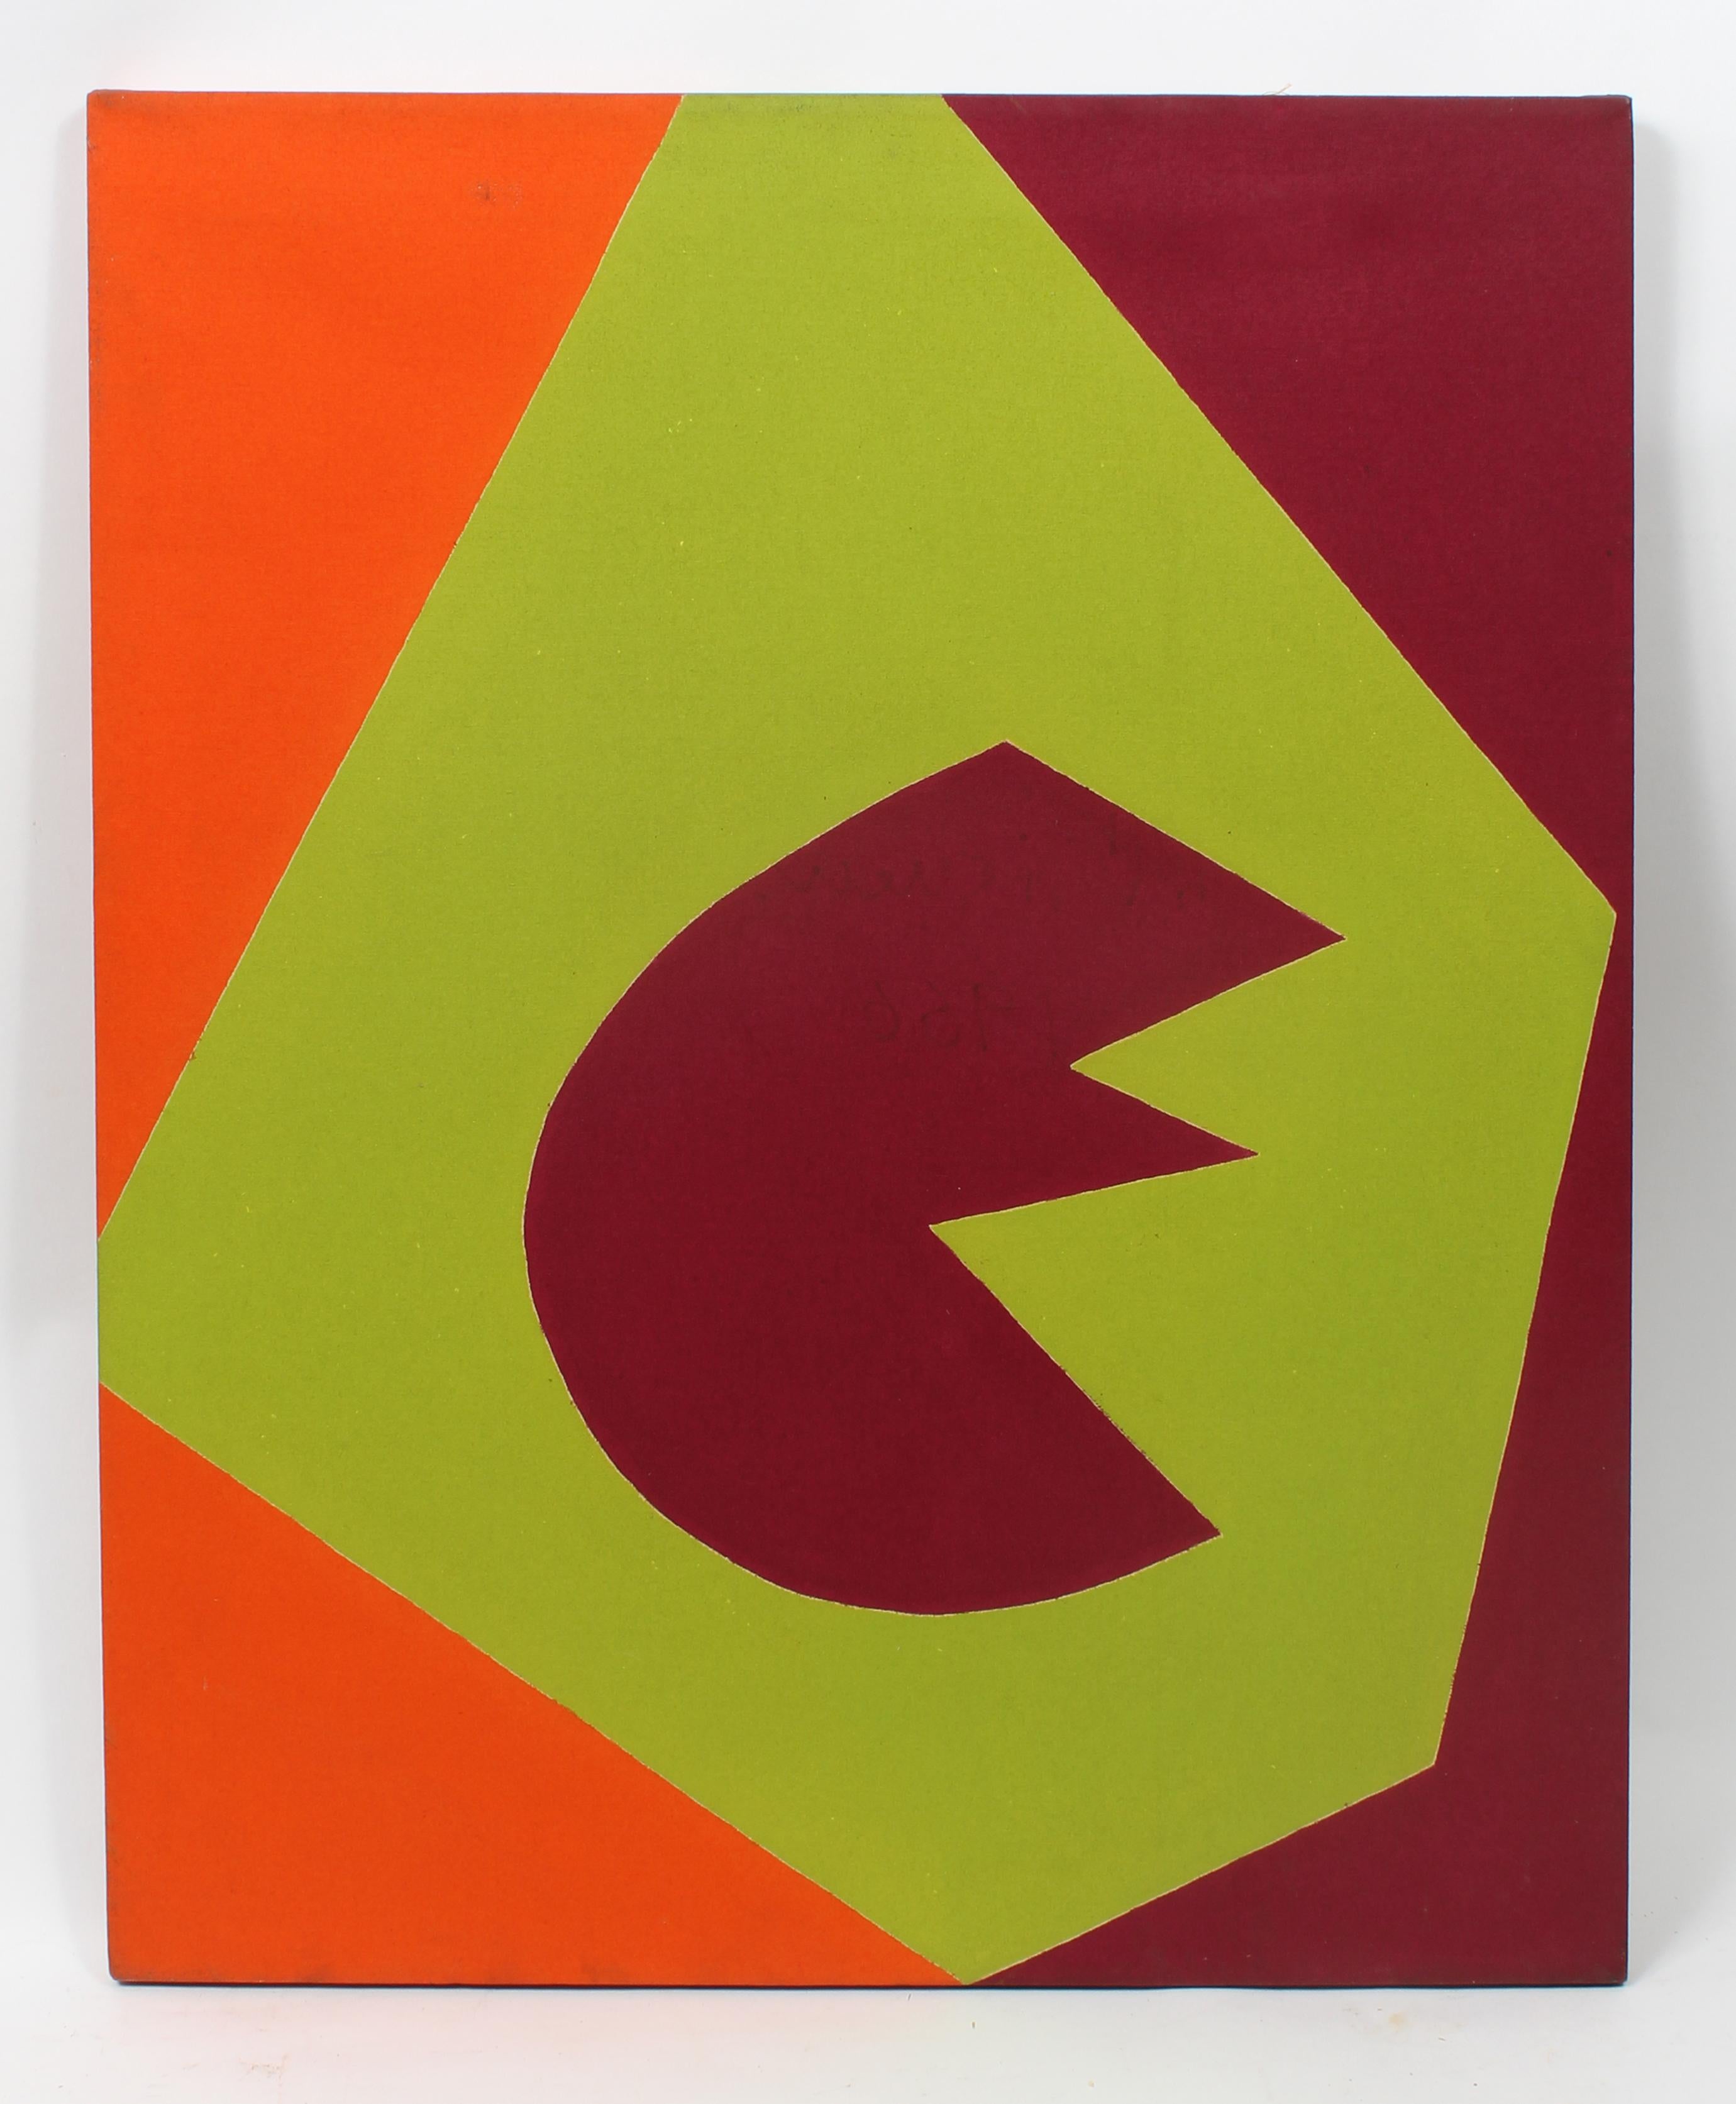 Martica Miguens Abstract Painting – Minimalistisches, minimalistisches Gemälde, New York, amerikanische Künstlerin, Maroon, Grün, Orange 1966